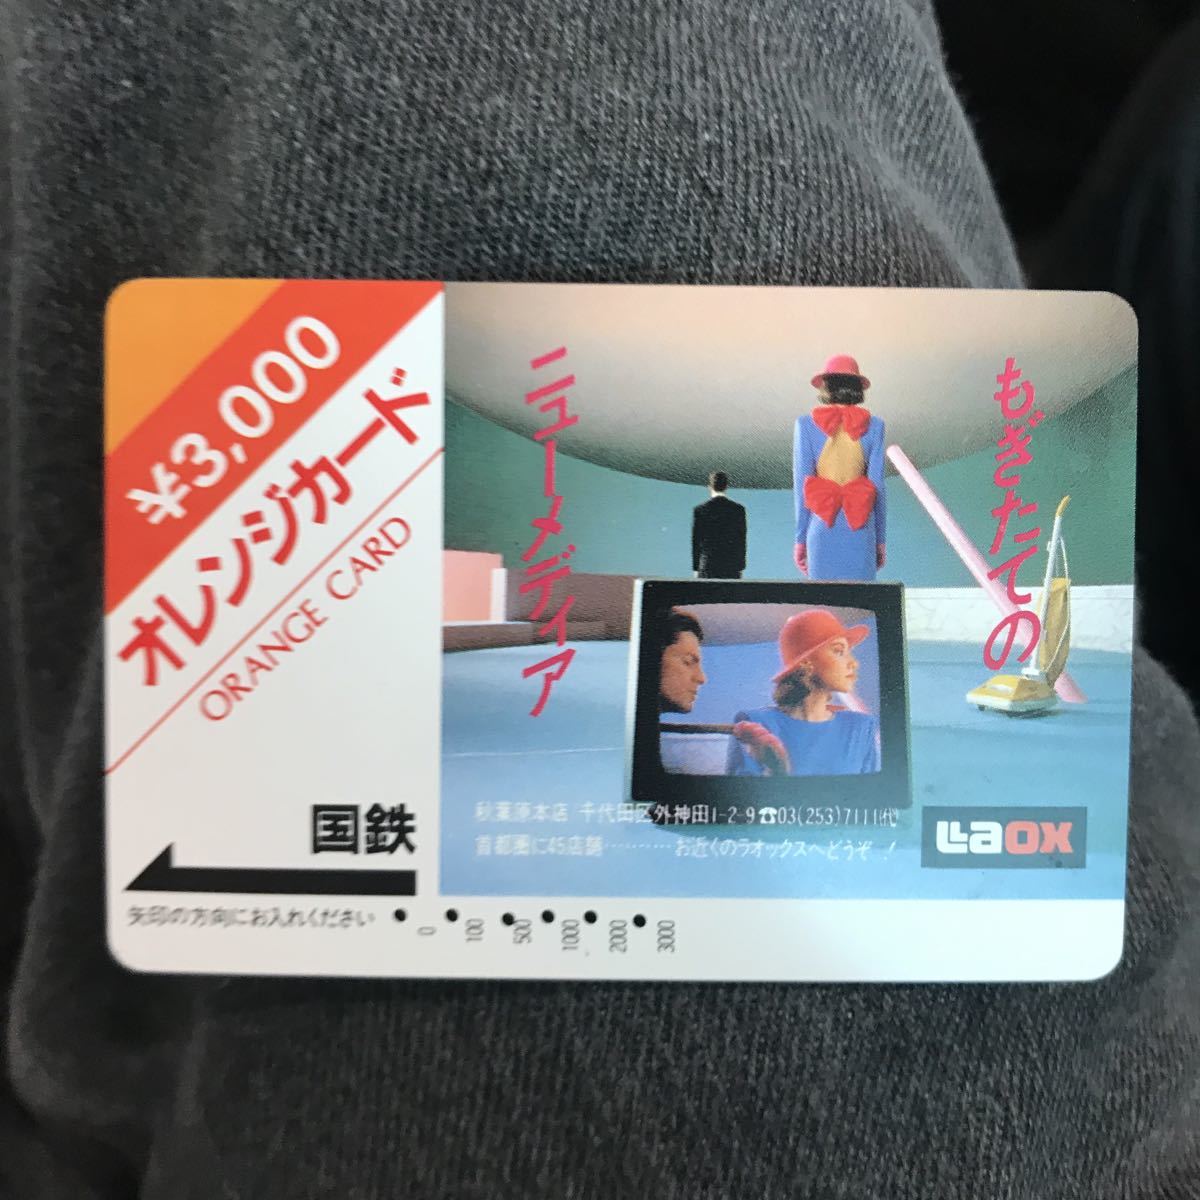 オレンジカード国鉄ラオックス3000円券使用済_画像1